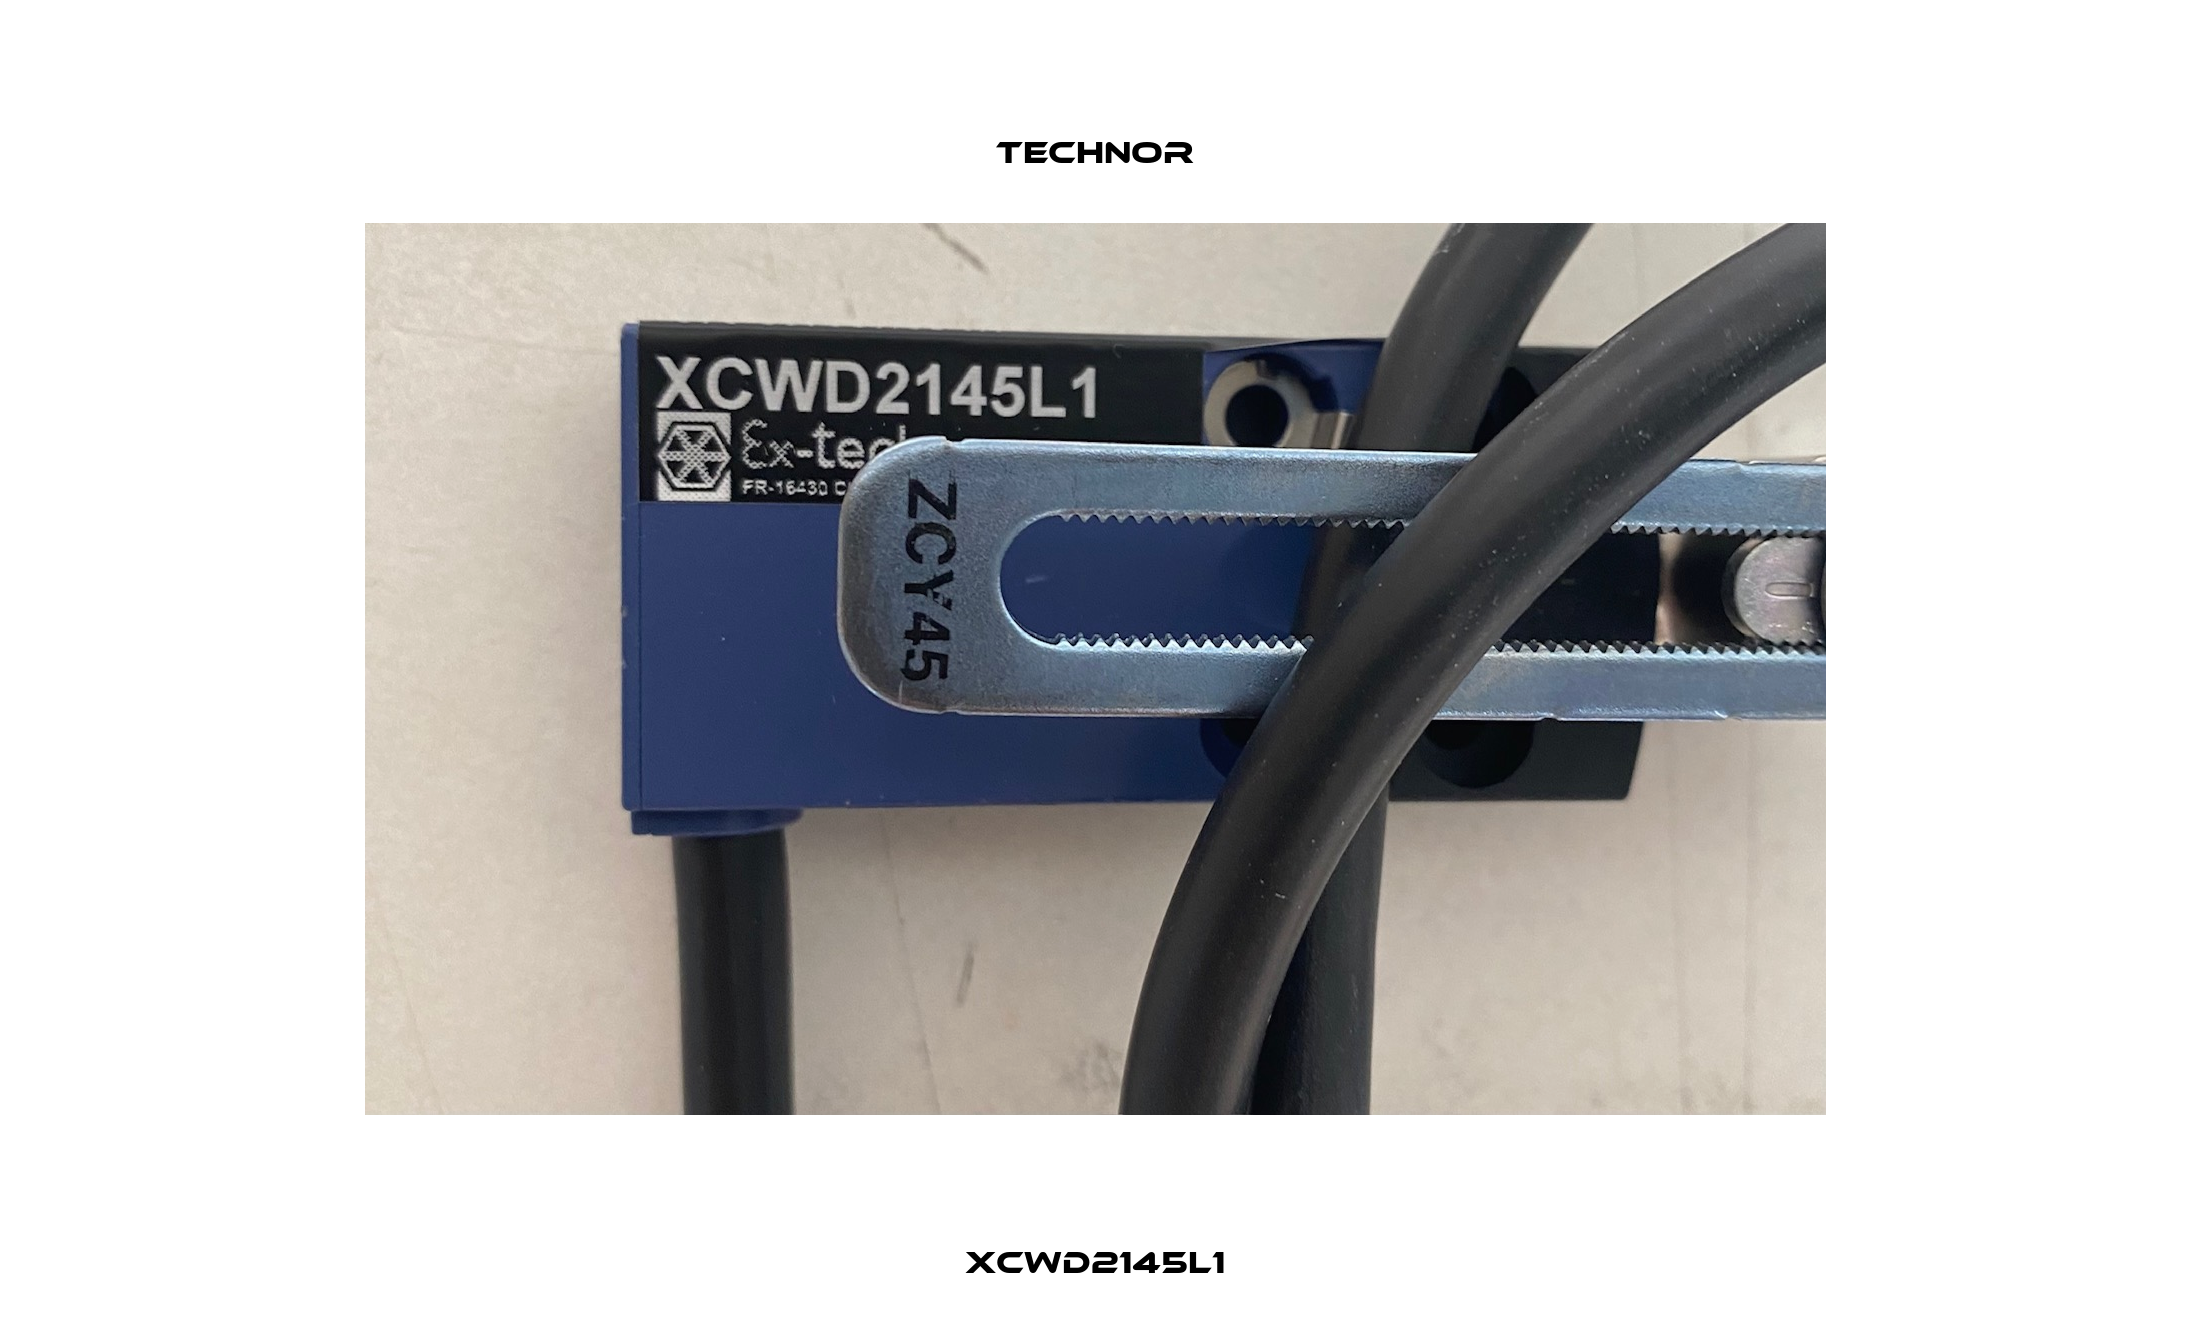 XCWD2145L1 TECHNOR